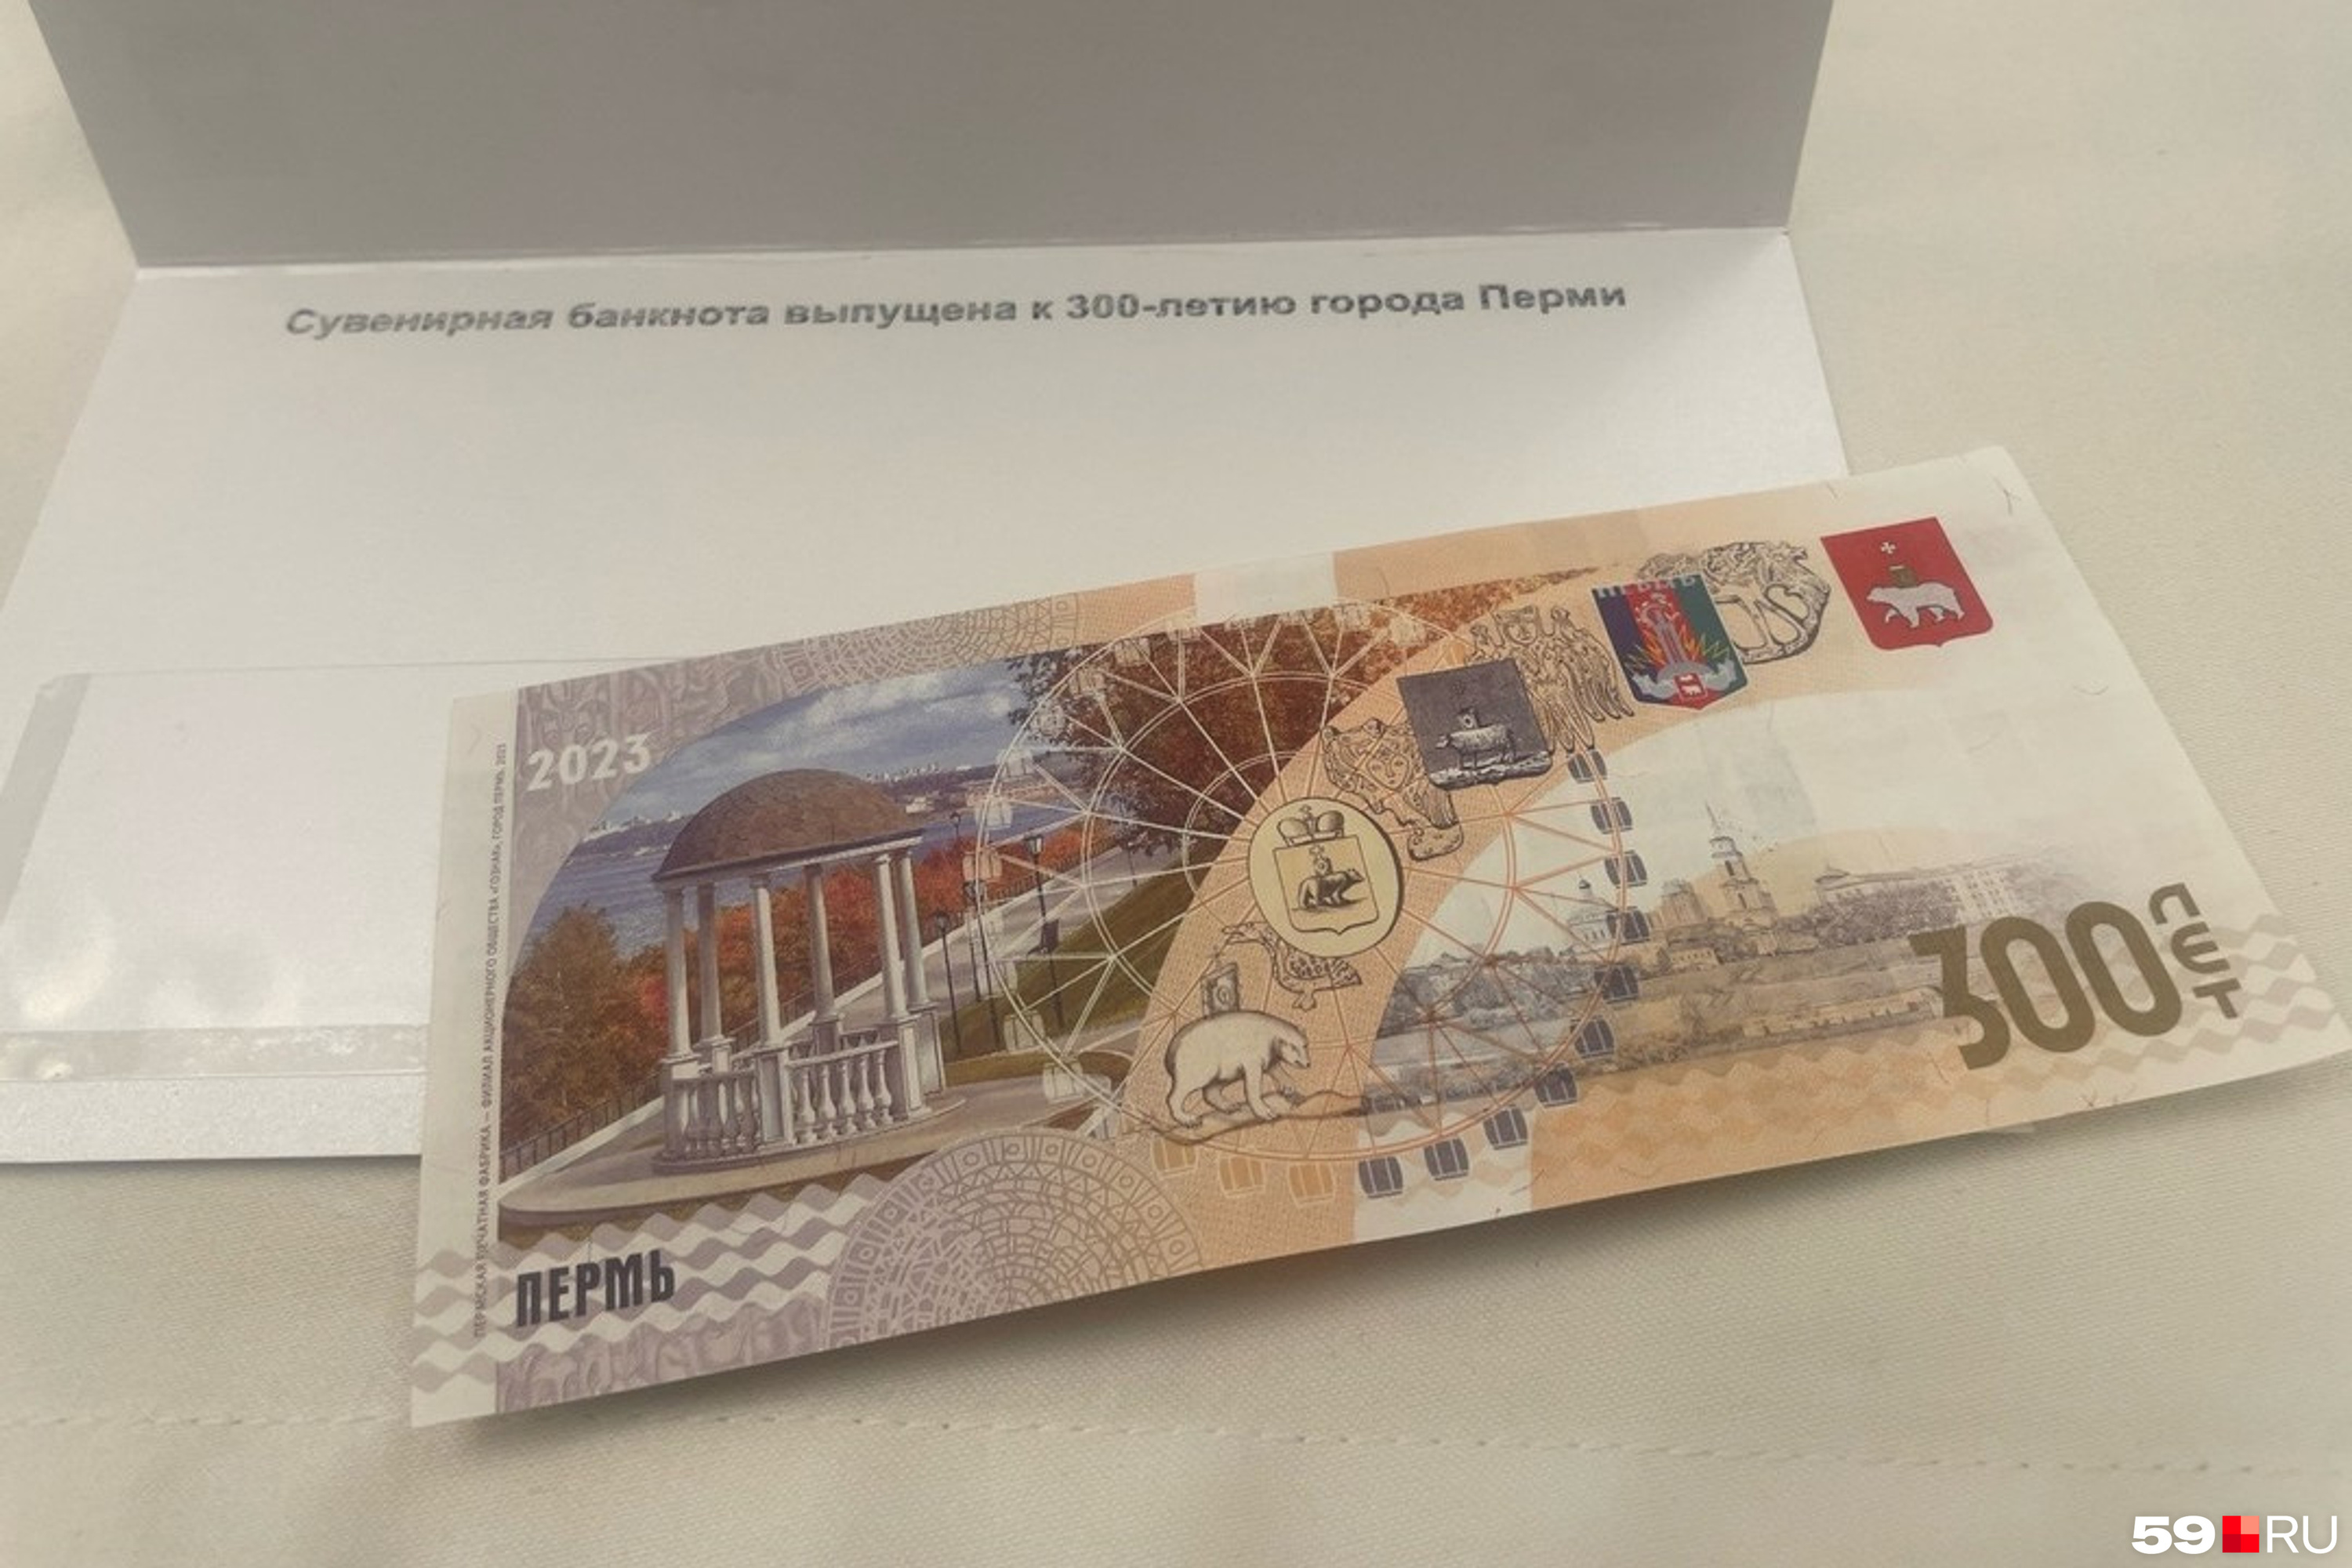 21 300 рублей